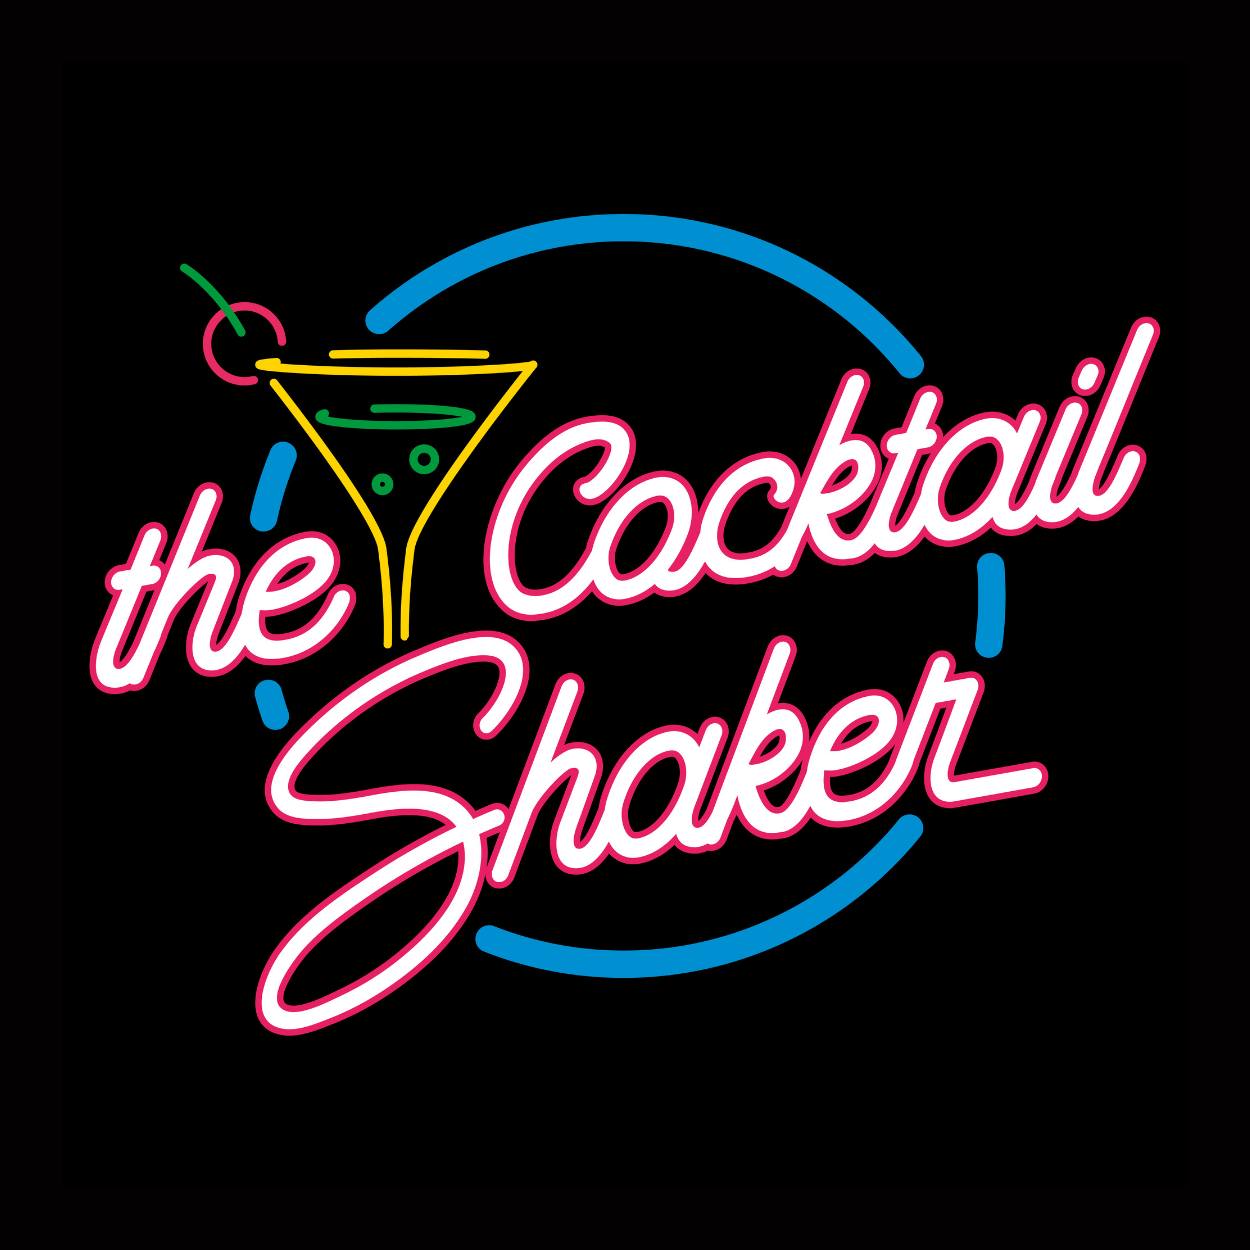 Het logo van The Cocktail Shaker